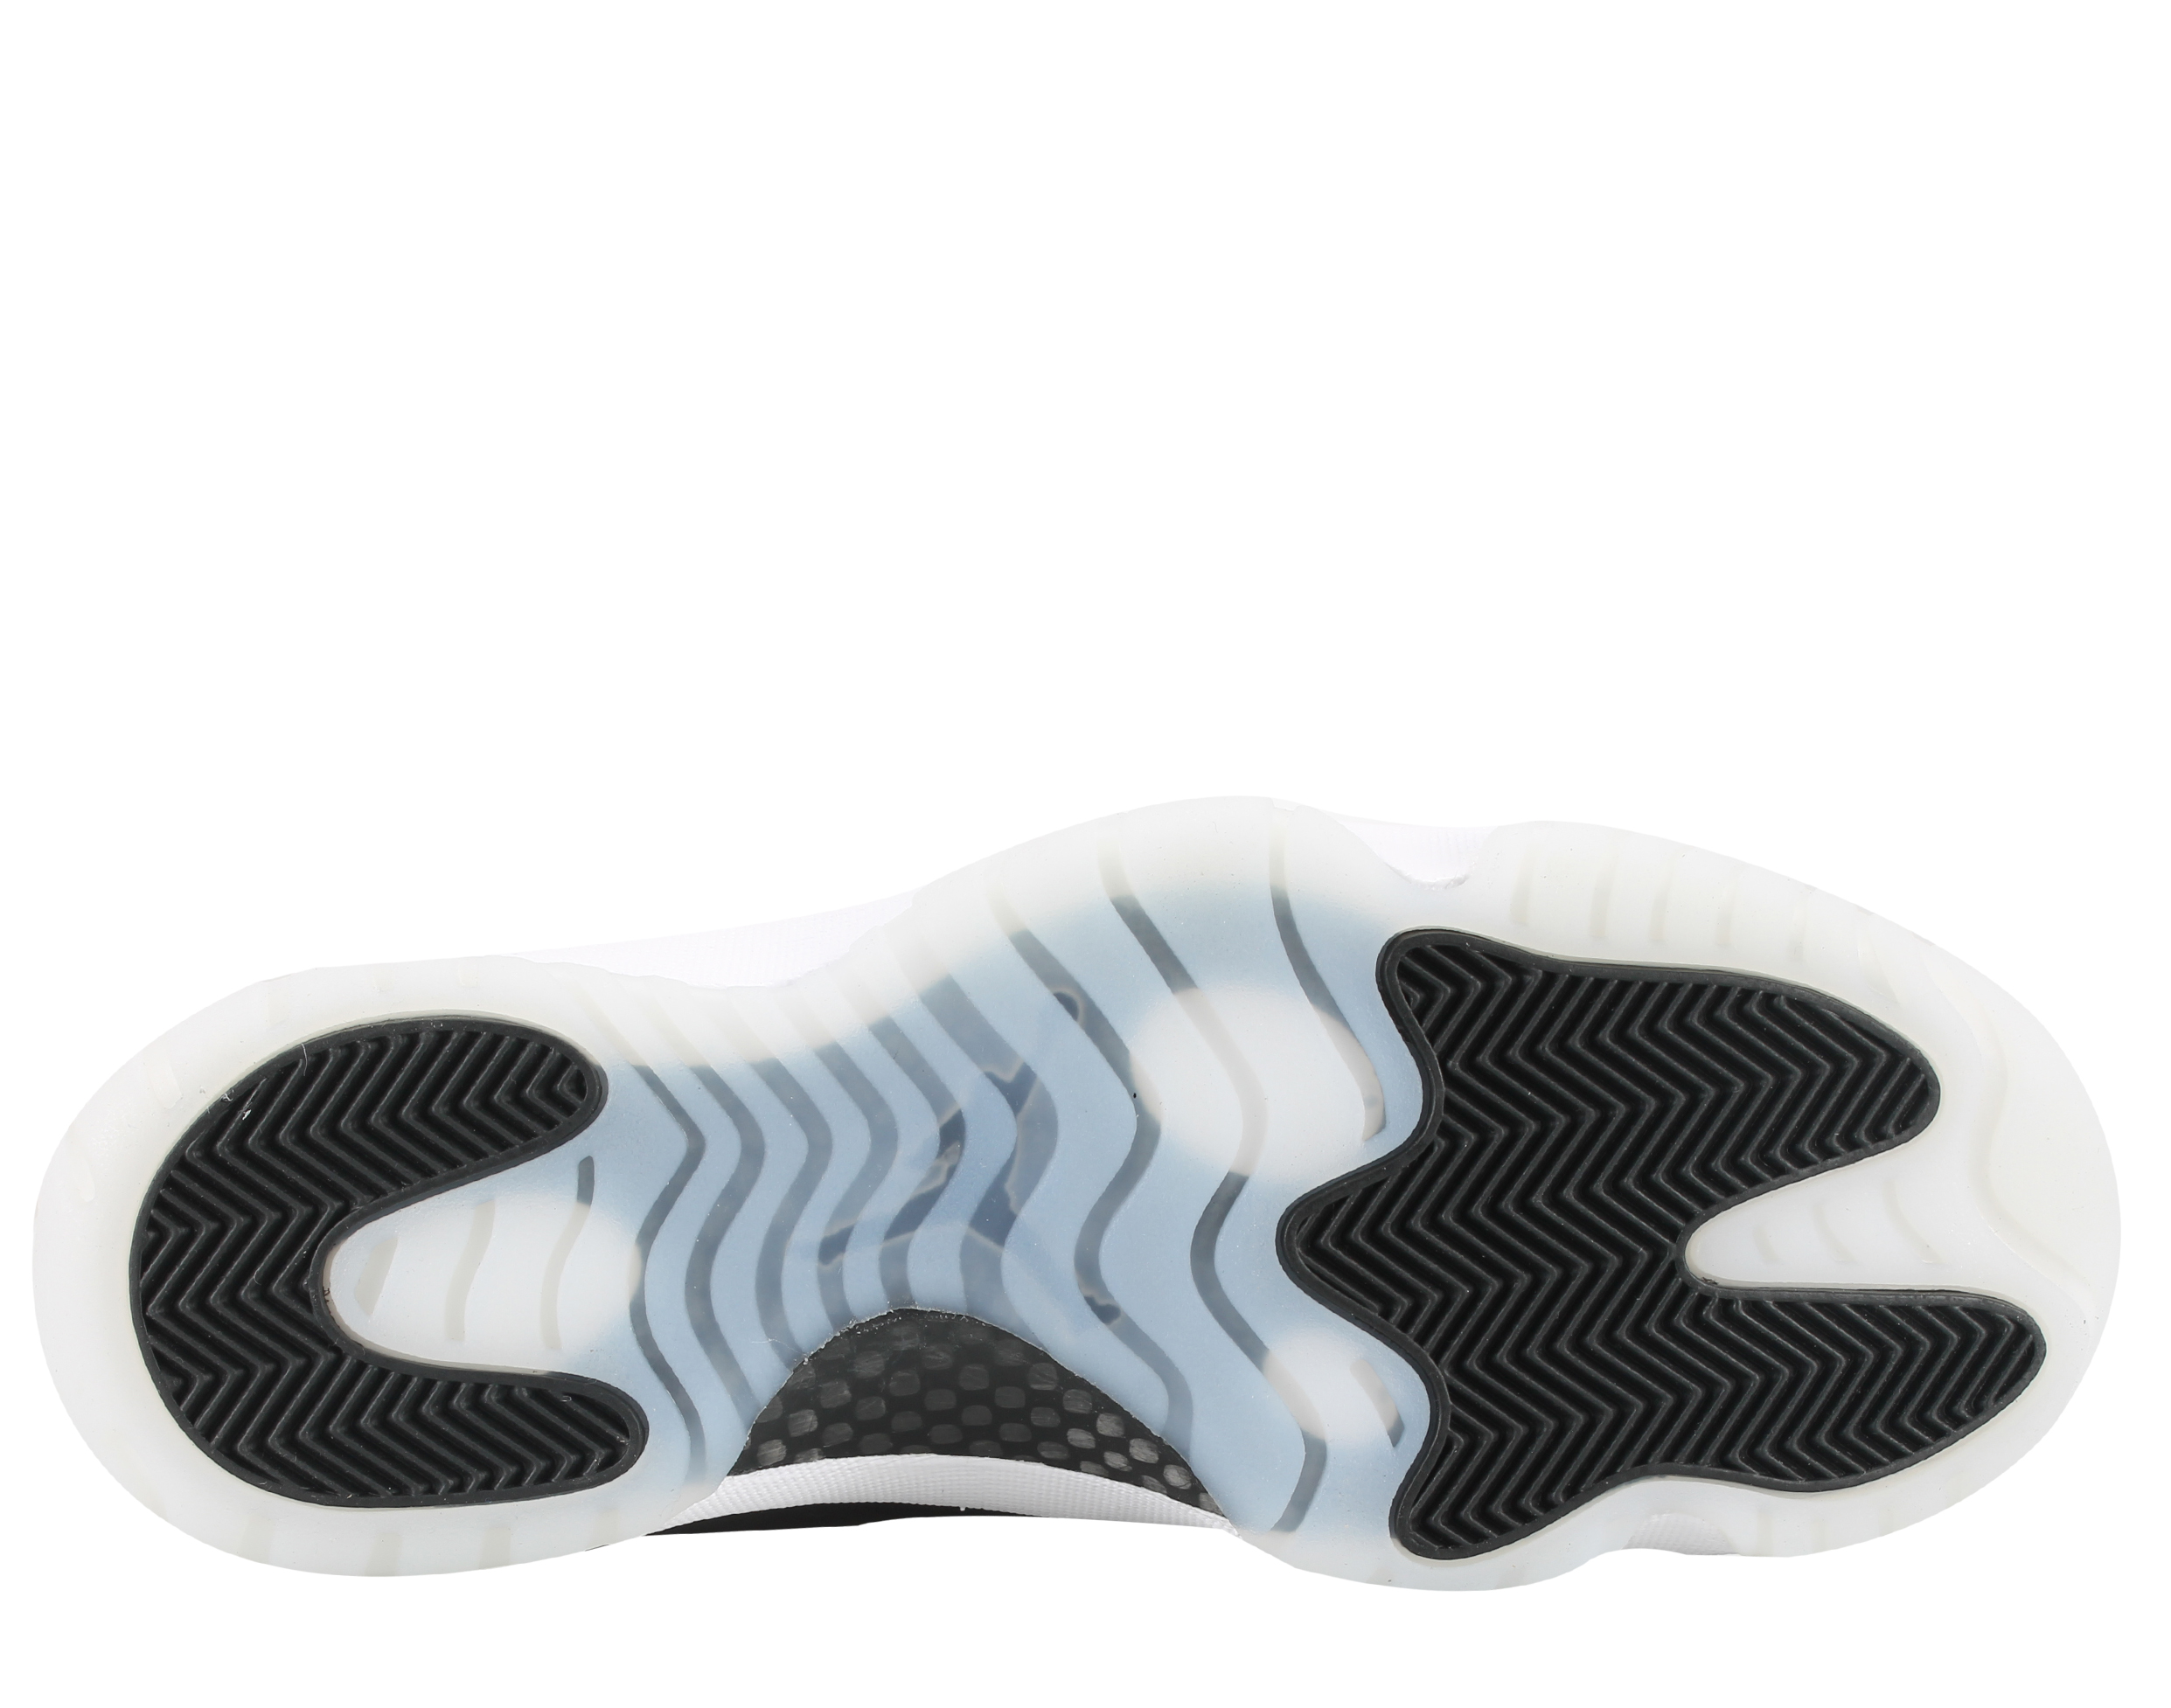 Nike Mens Air Jordan 11 Retro Low "Barons" Black/White-Silver 528895-010 - image 5 of 6